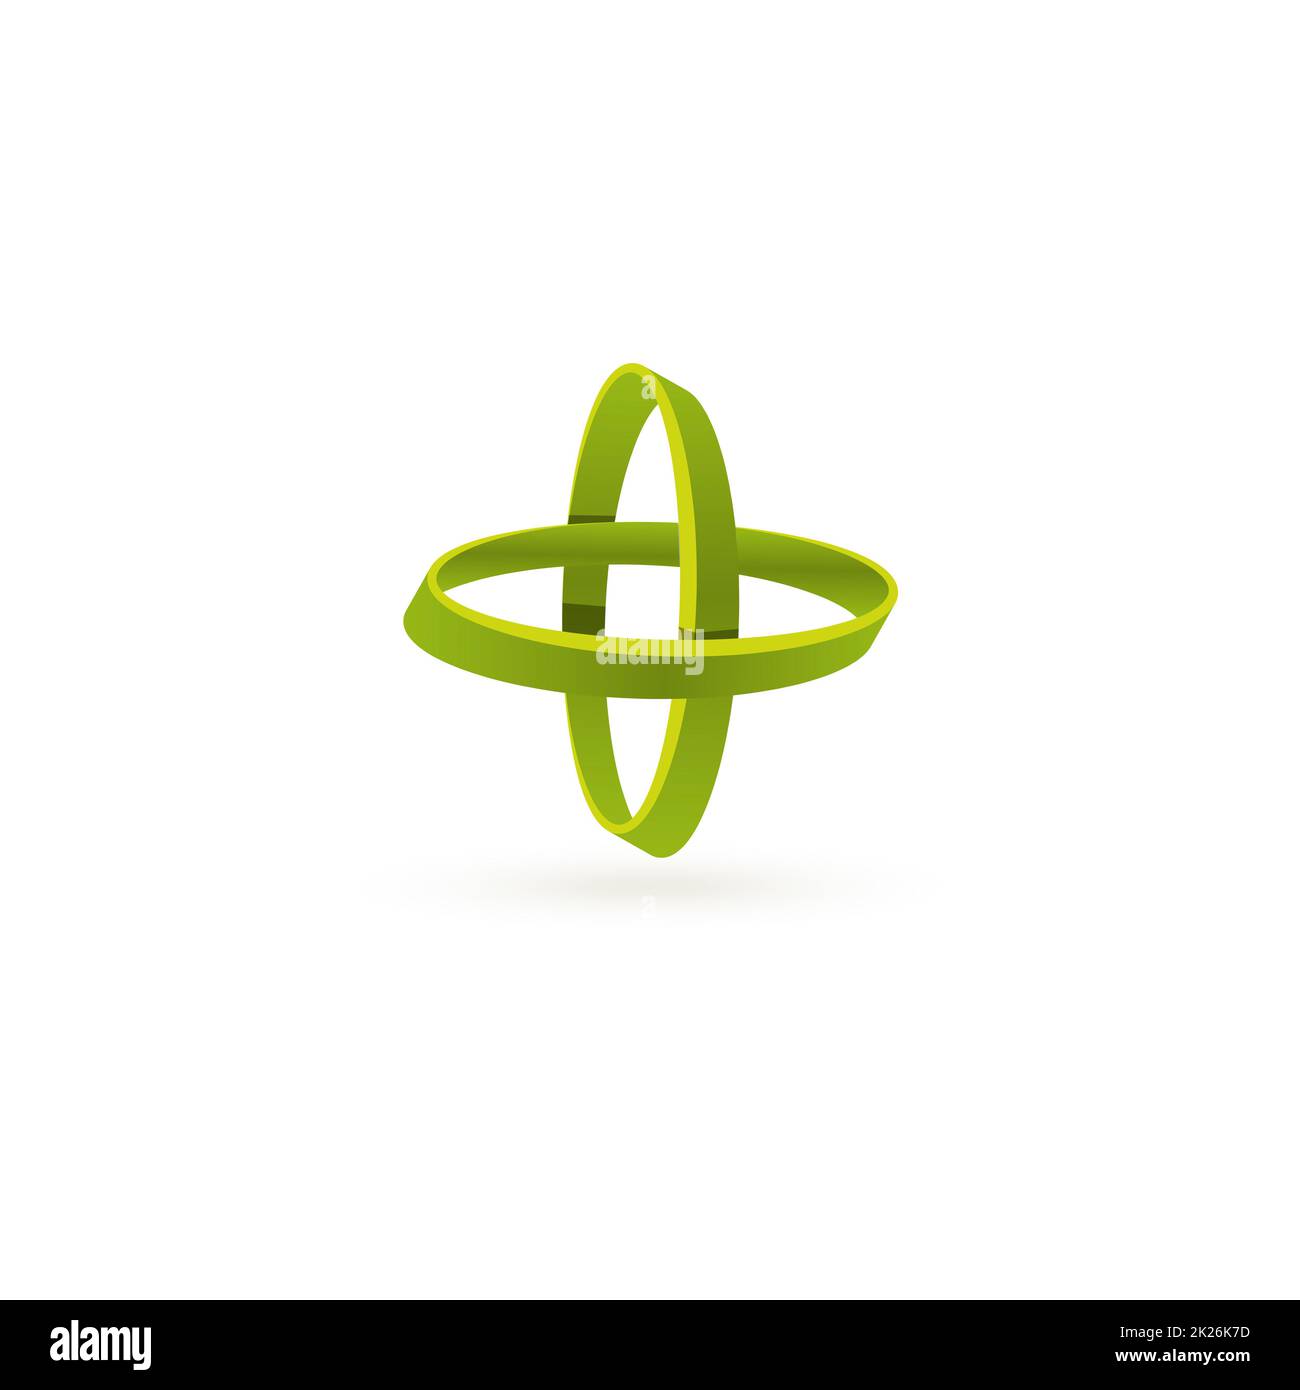 Isolierte grüne Farbe Kreuz Vektor-Logo. Abstrakte Kreise auf dem weißen Hintergrund. Geometrische Elemente. Bewegung der Atome. Stockfoto